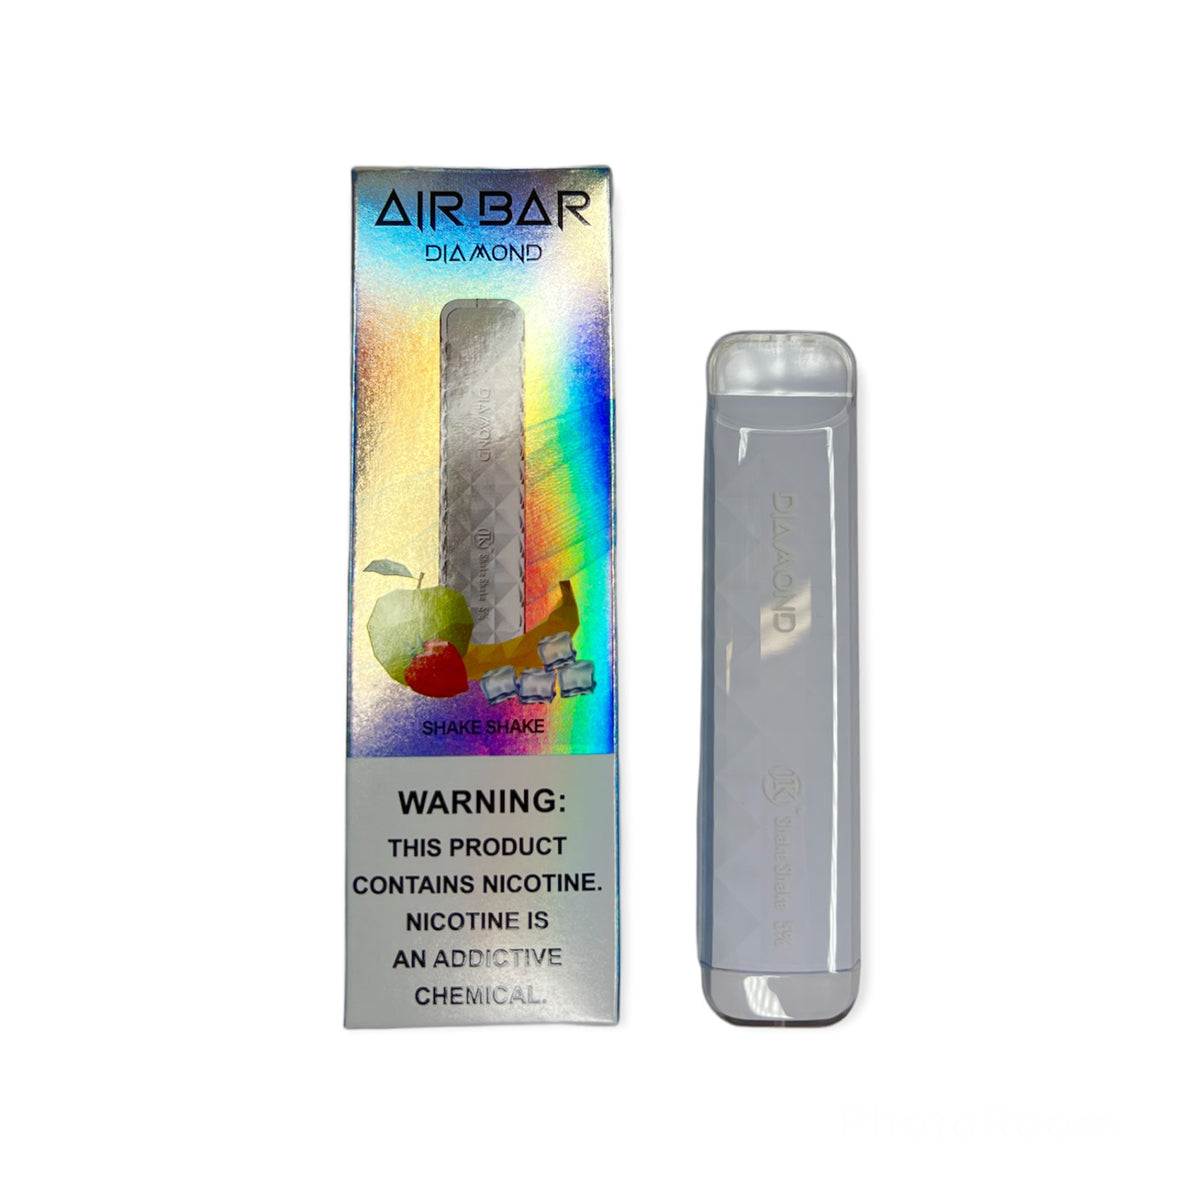 Air Bar Diamond shake shake - Golden Leaf Shop